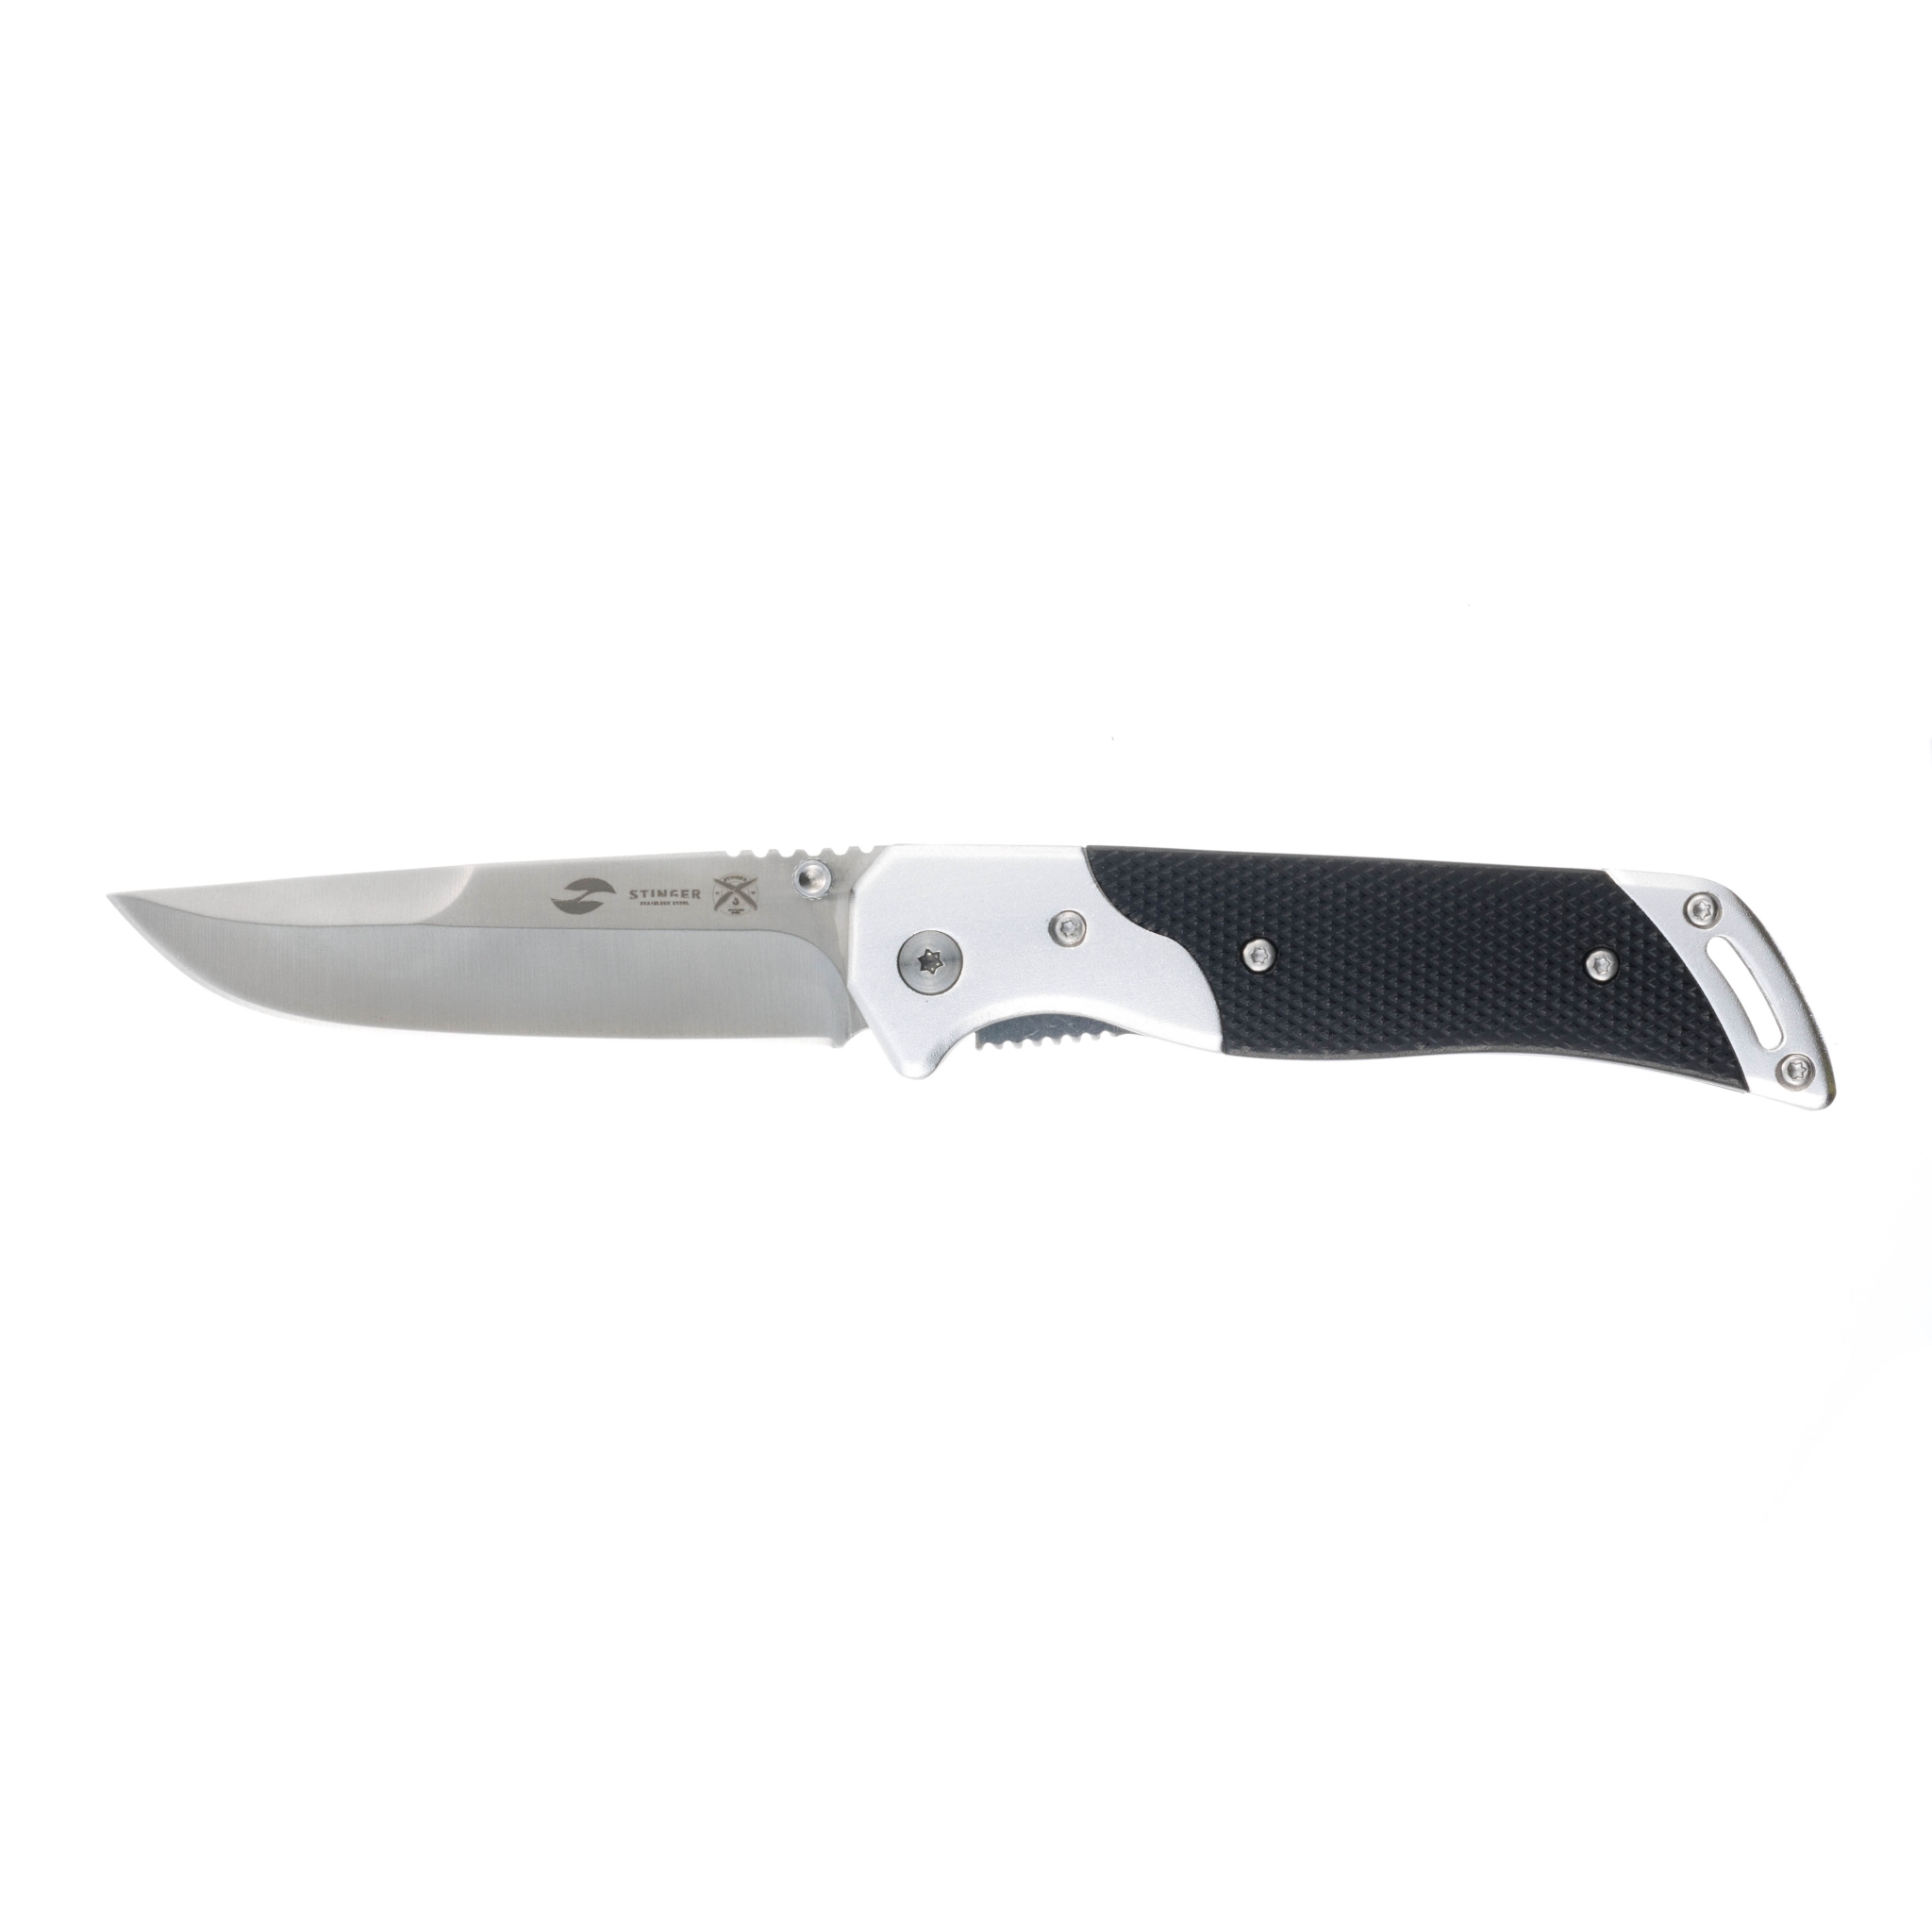 Нож складной Stinger, 90 мм (серебристый), материал рукояти: алюминий (чёрно-серебристый), черный, алюминий, нержавеющая сталь